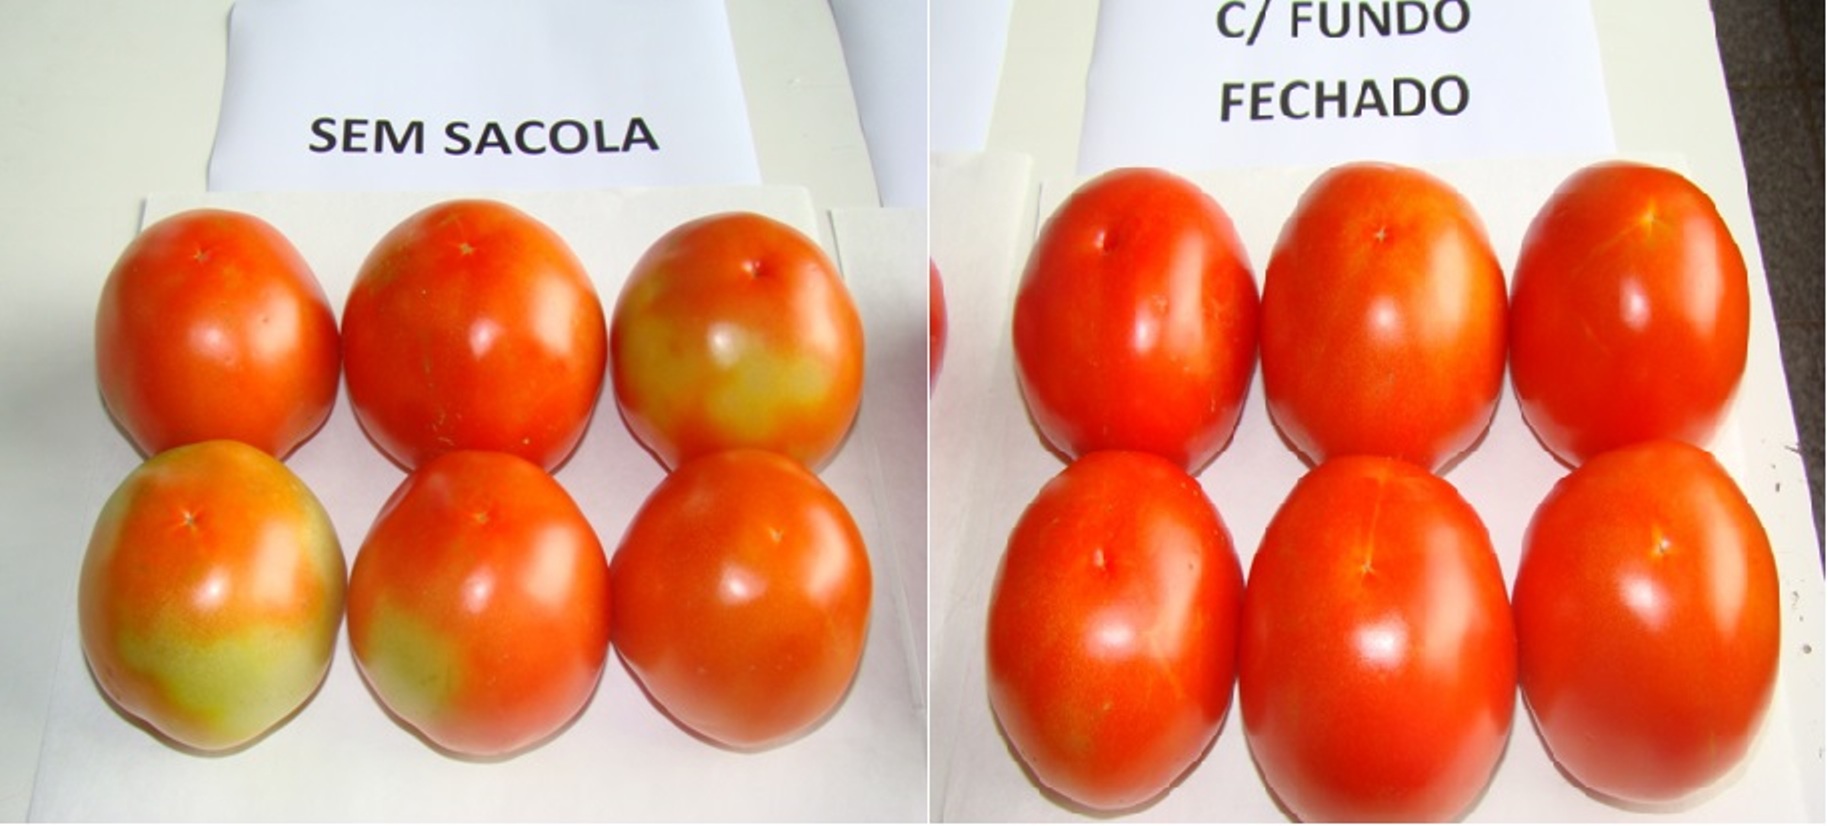 Ensacamento das pencas de tomate evita brocas - Créditos Dirceu Pratissoli